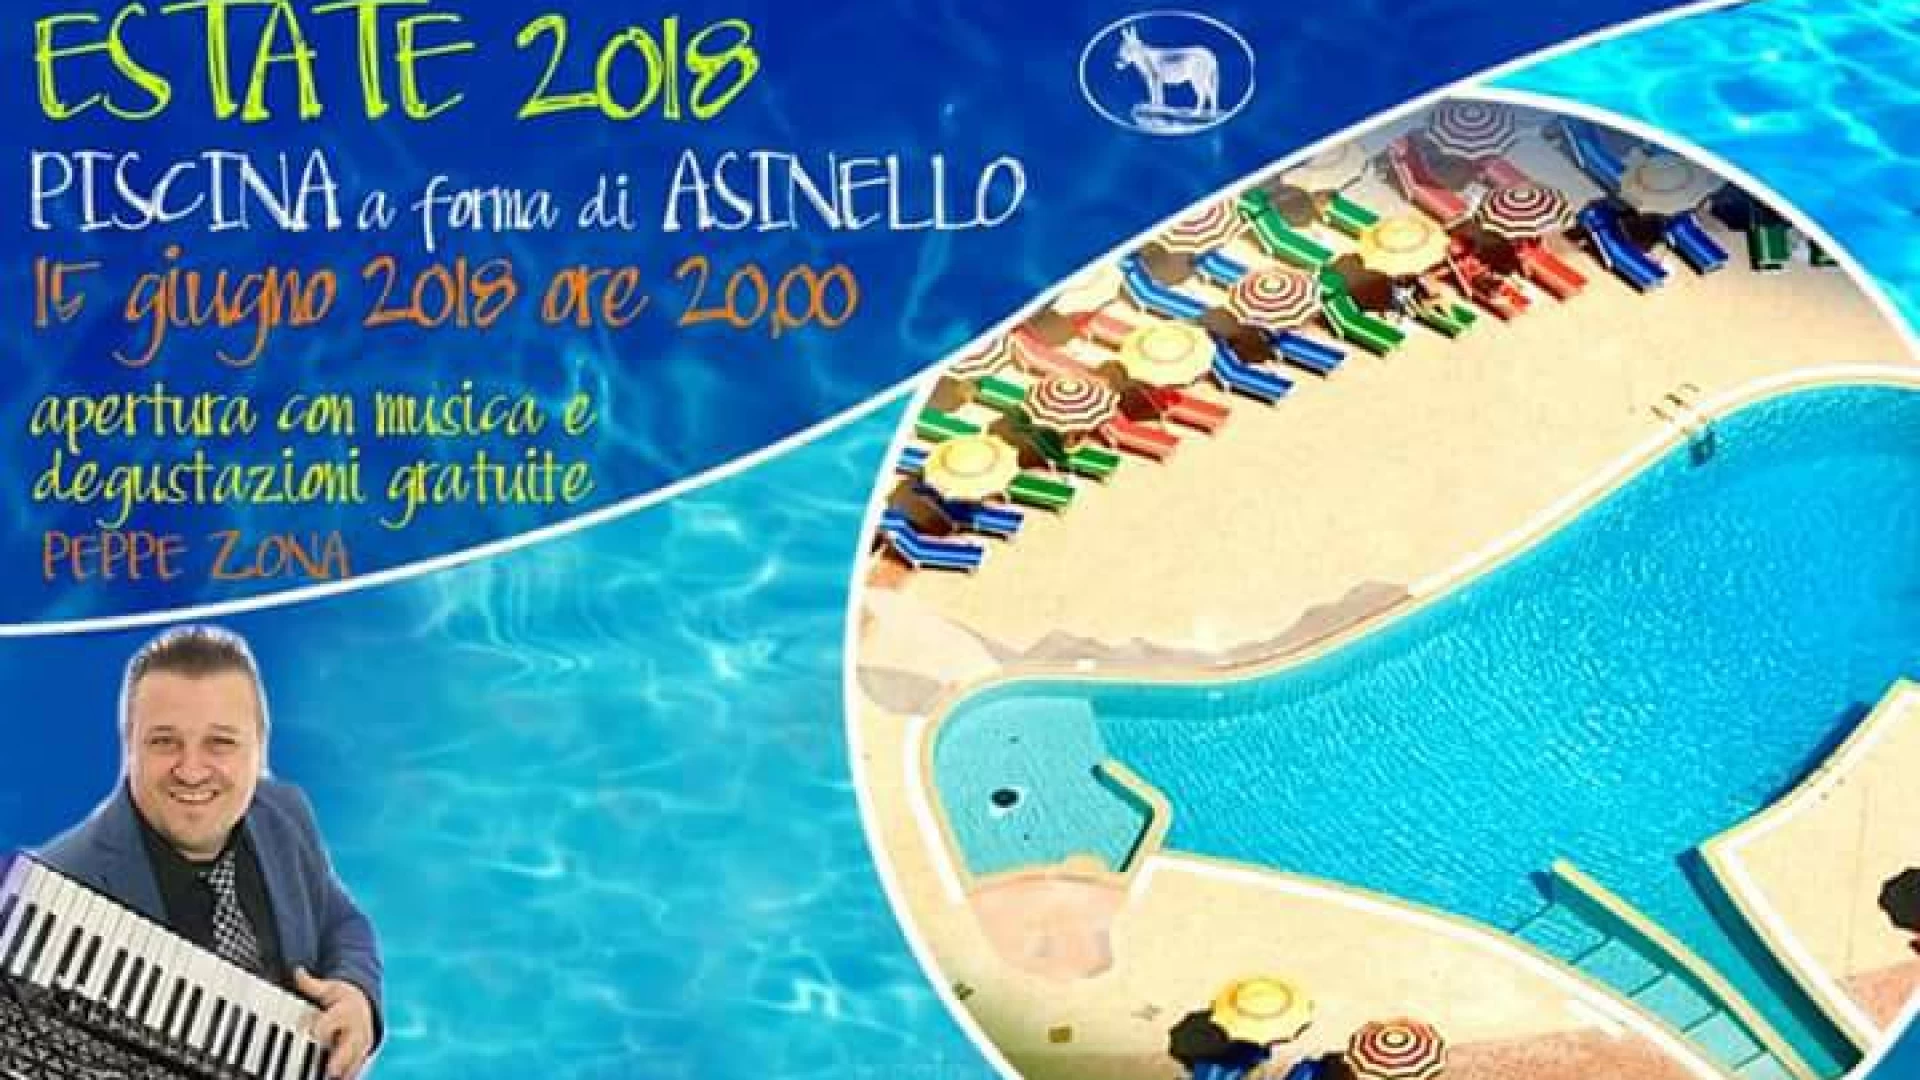 Al Villaggio Rurale “Le Sette Querce” al via la stagione estiva. Venerdì 15 giugno l’inaugurazione della piscina  a forma di asinello. Ricco il programma dell’estate 2018 che verrà svelato nei prossimi giorni.